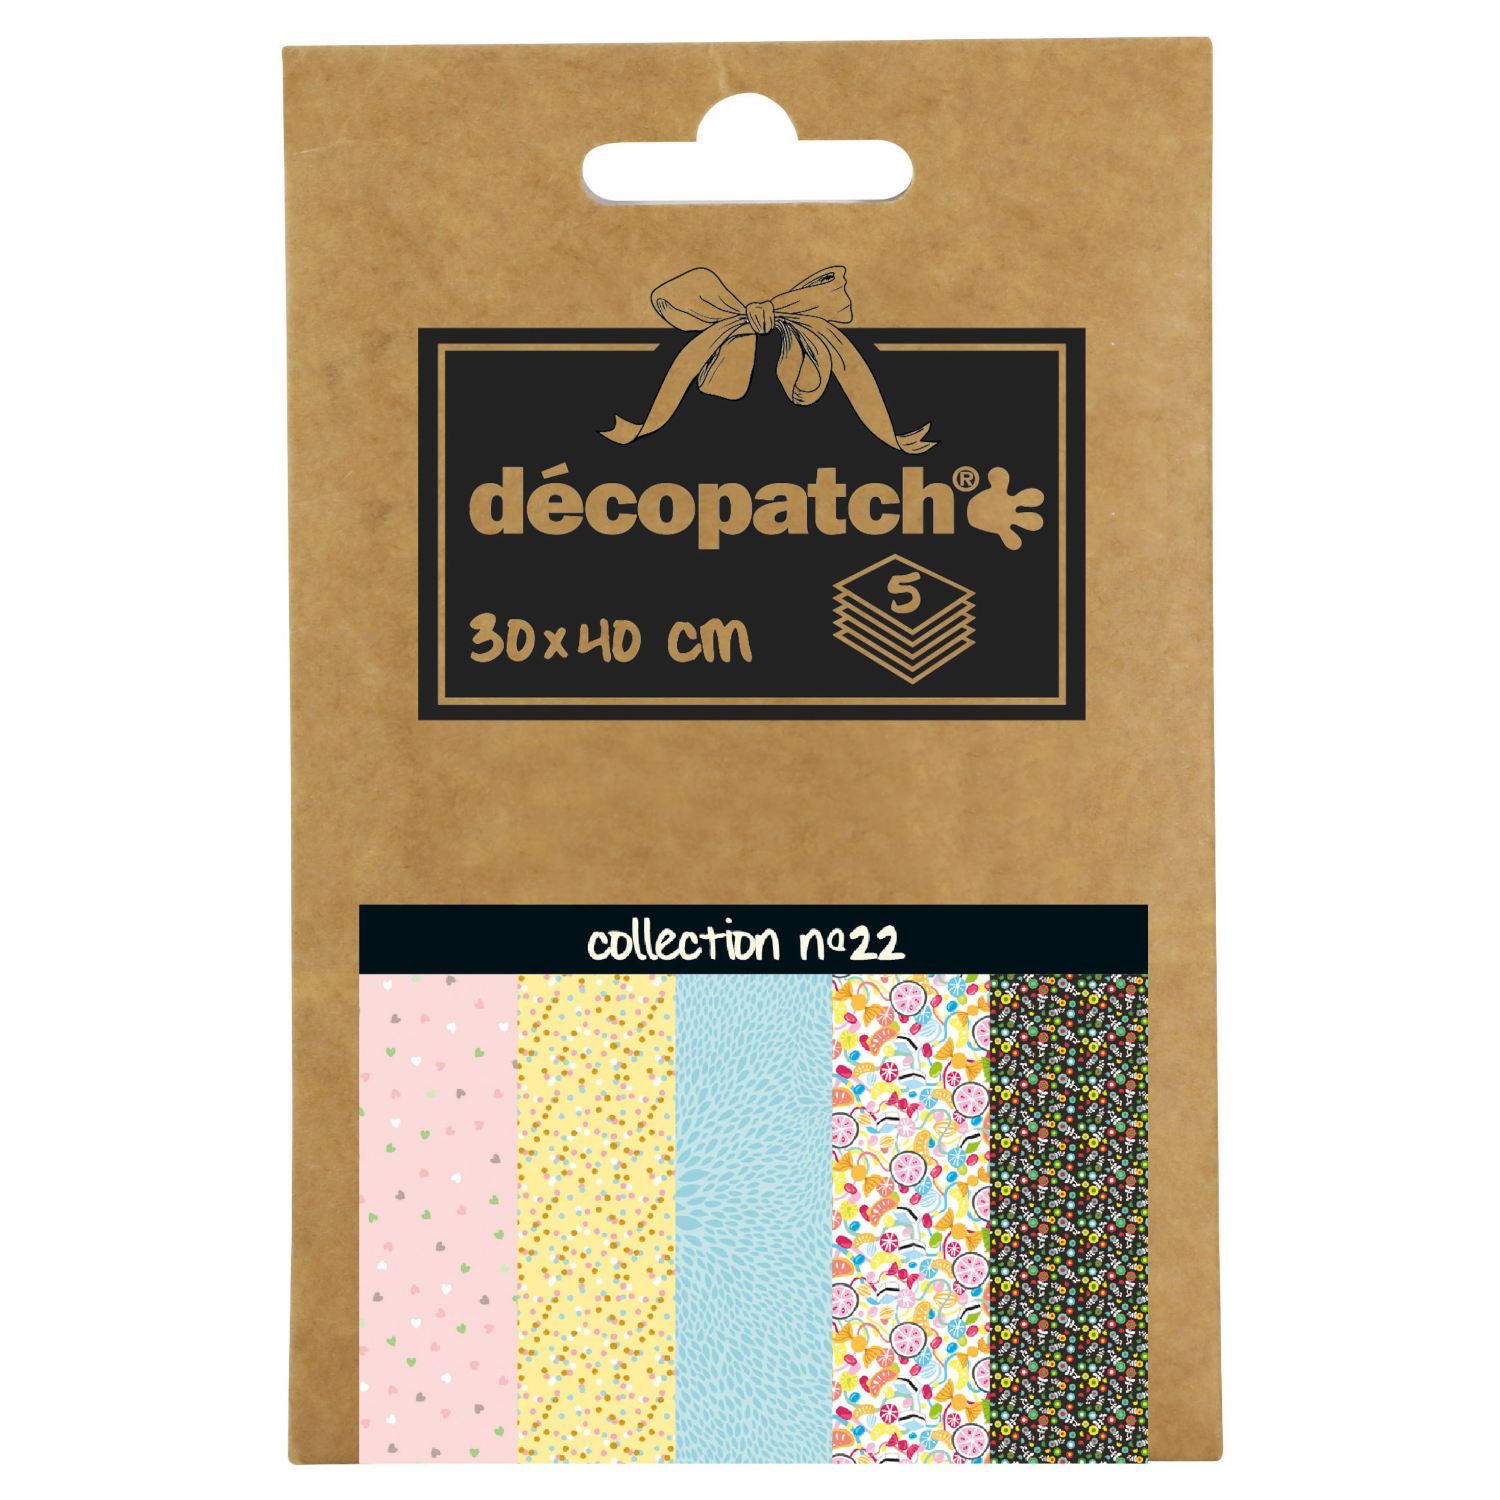 NEU Decoupage- / Decopatch-Papier Pocket-Sortierung, 5 Bogen 30 x 40 cm, Motive: 684, 746, 701, 827, 720